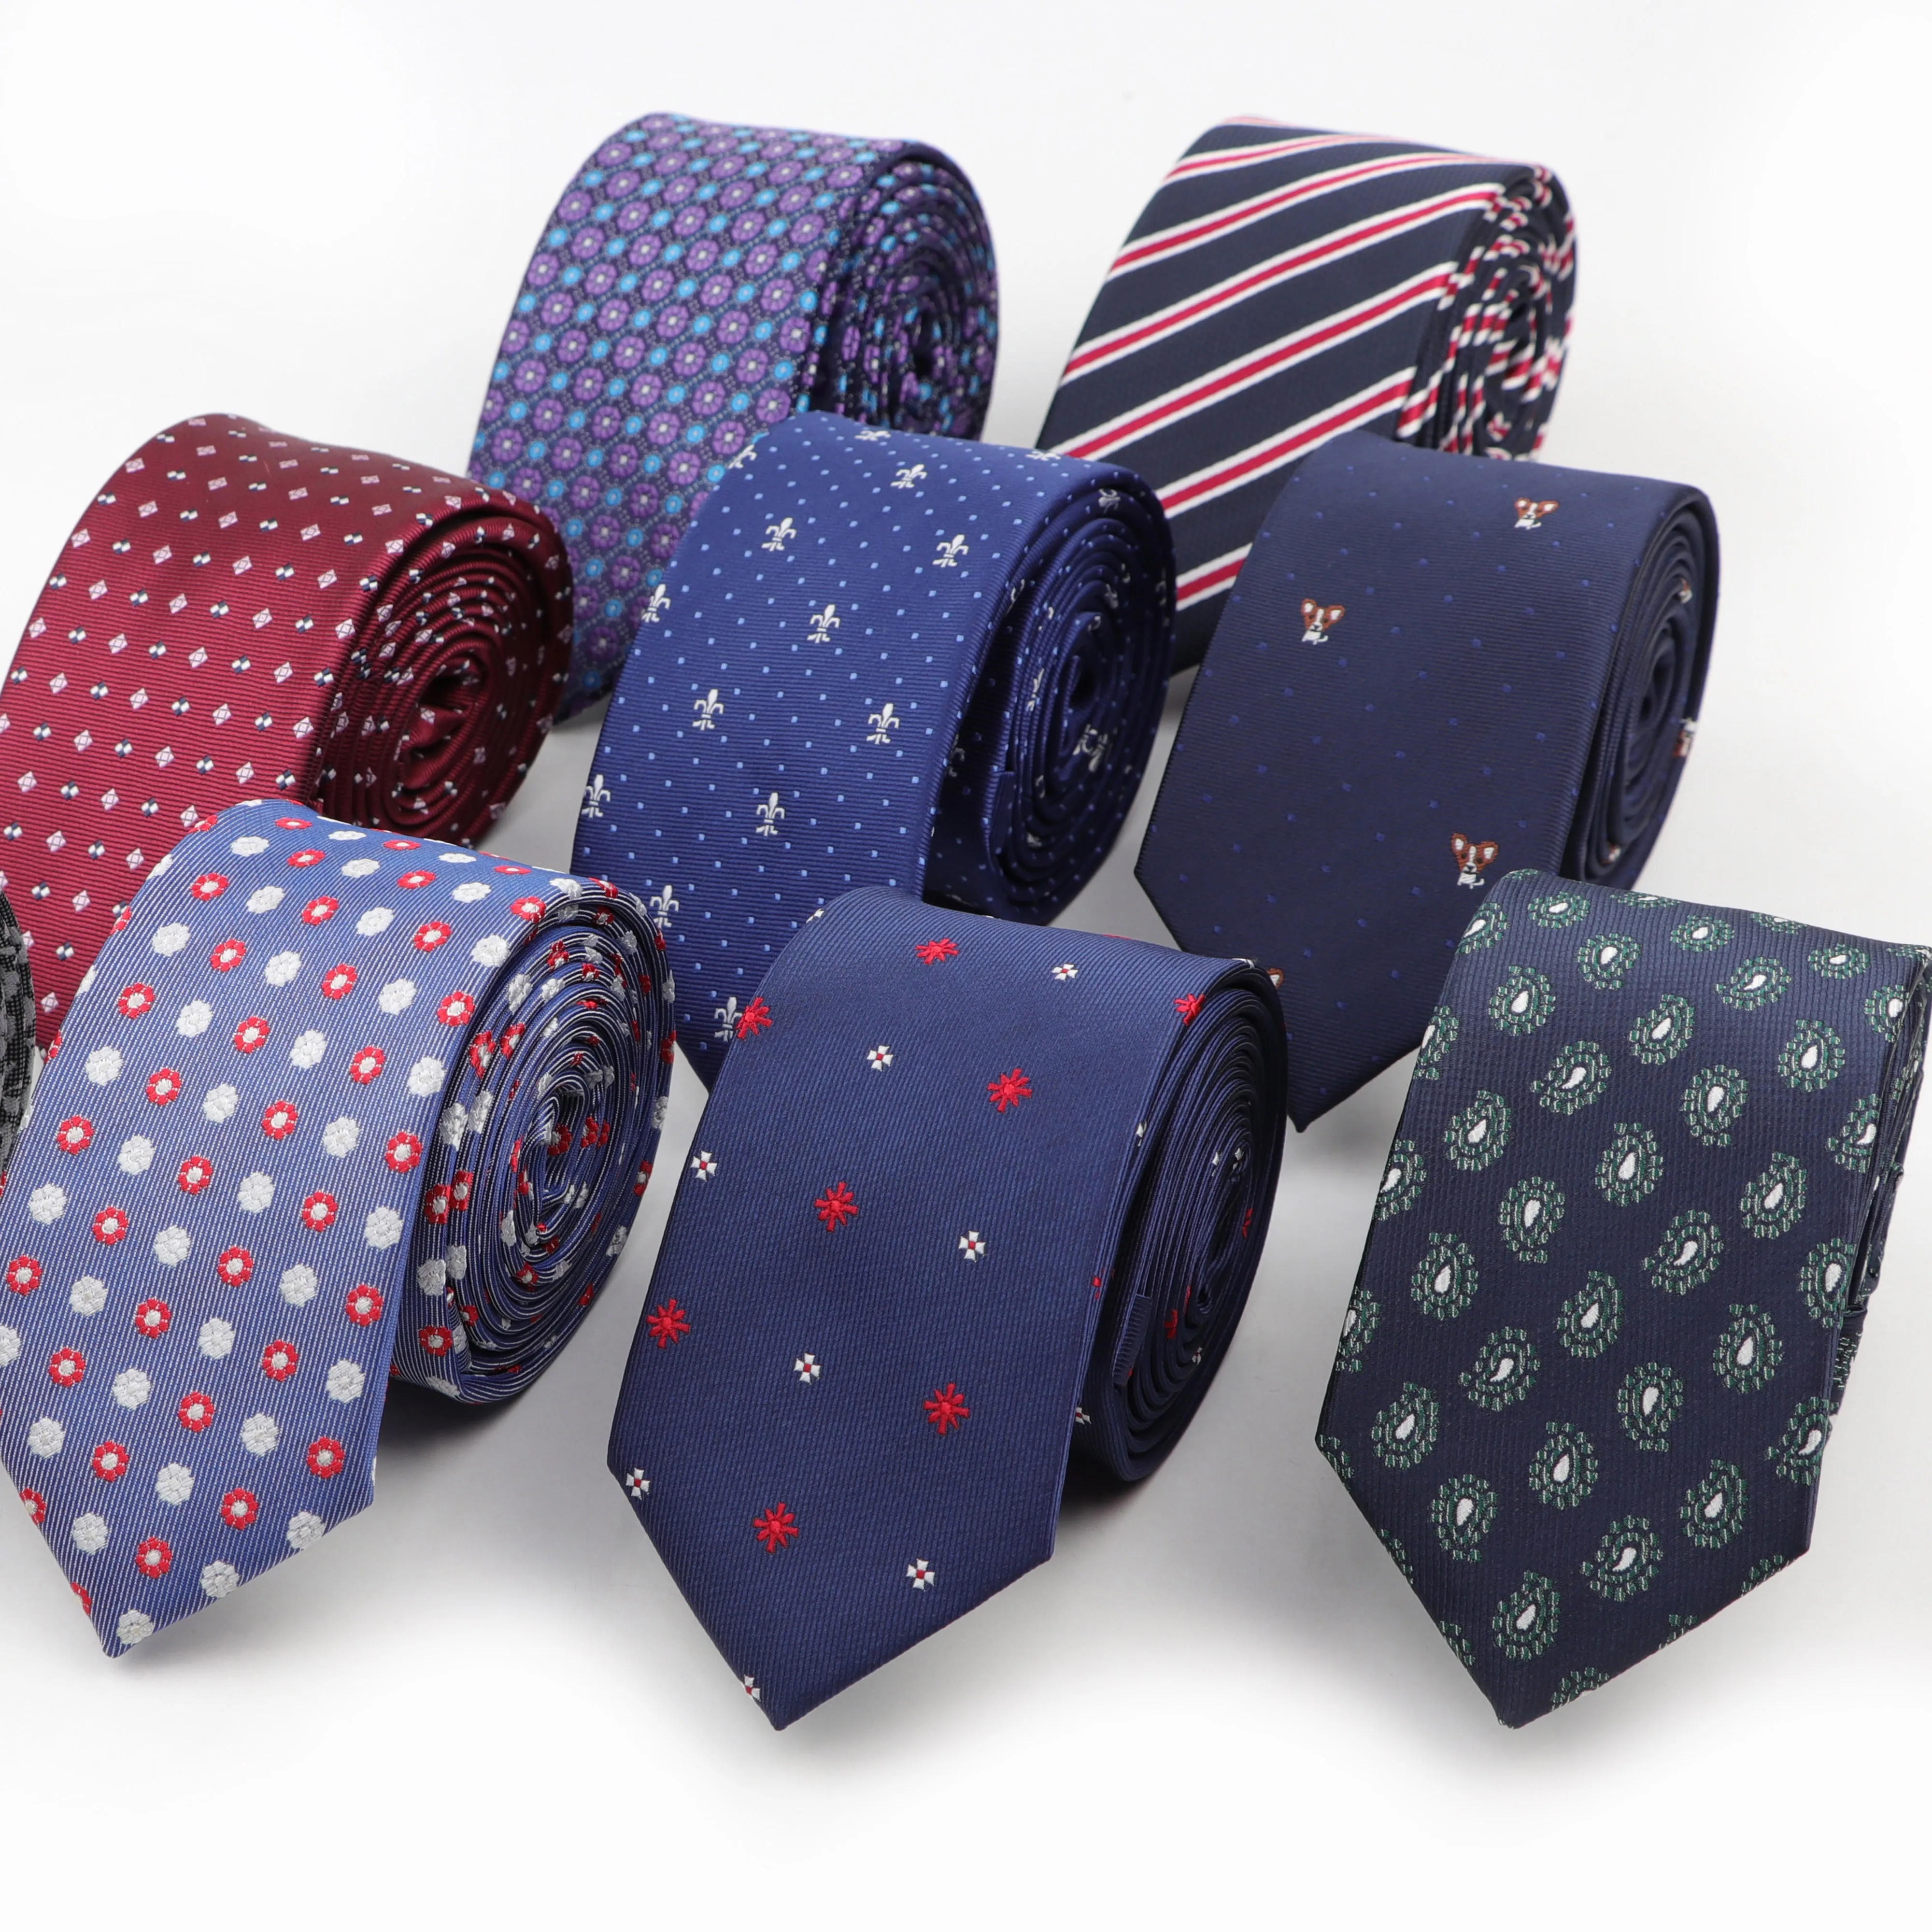 Narrow Striped Wedding Bowtie 6cm Business Neckwear Tie Necktie For Men Cravat